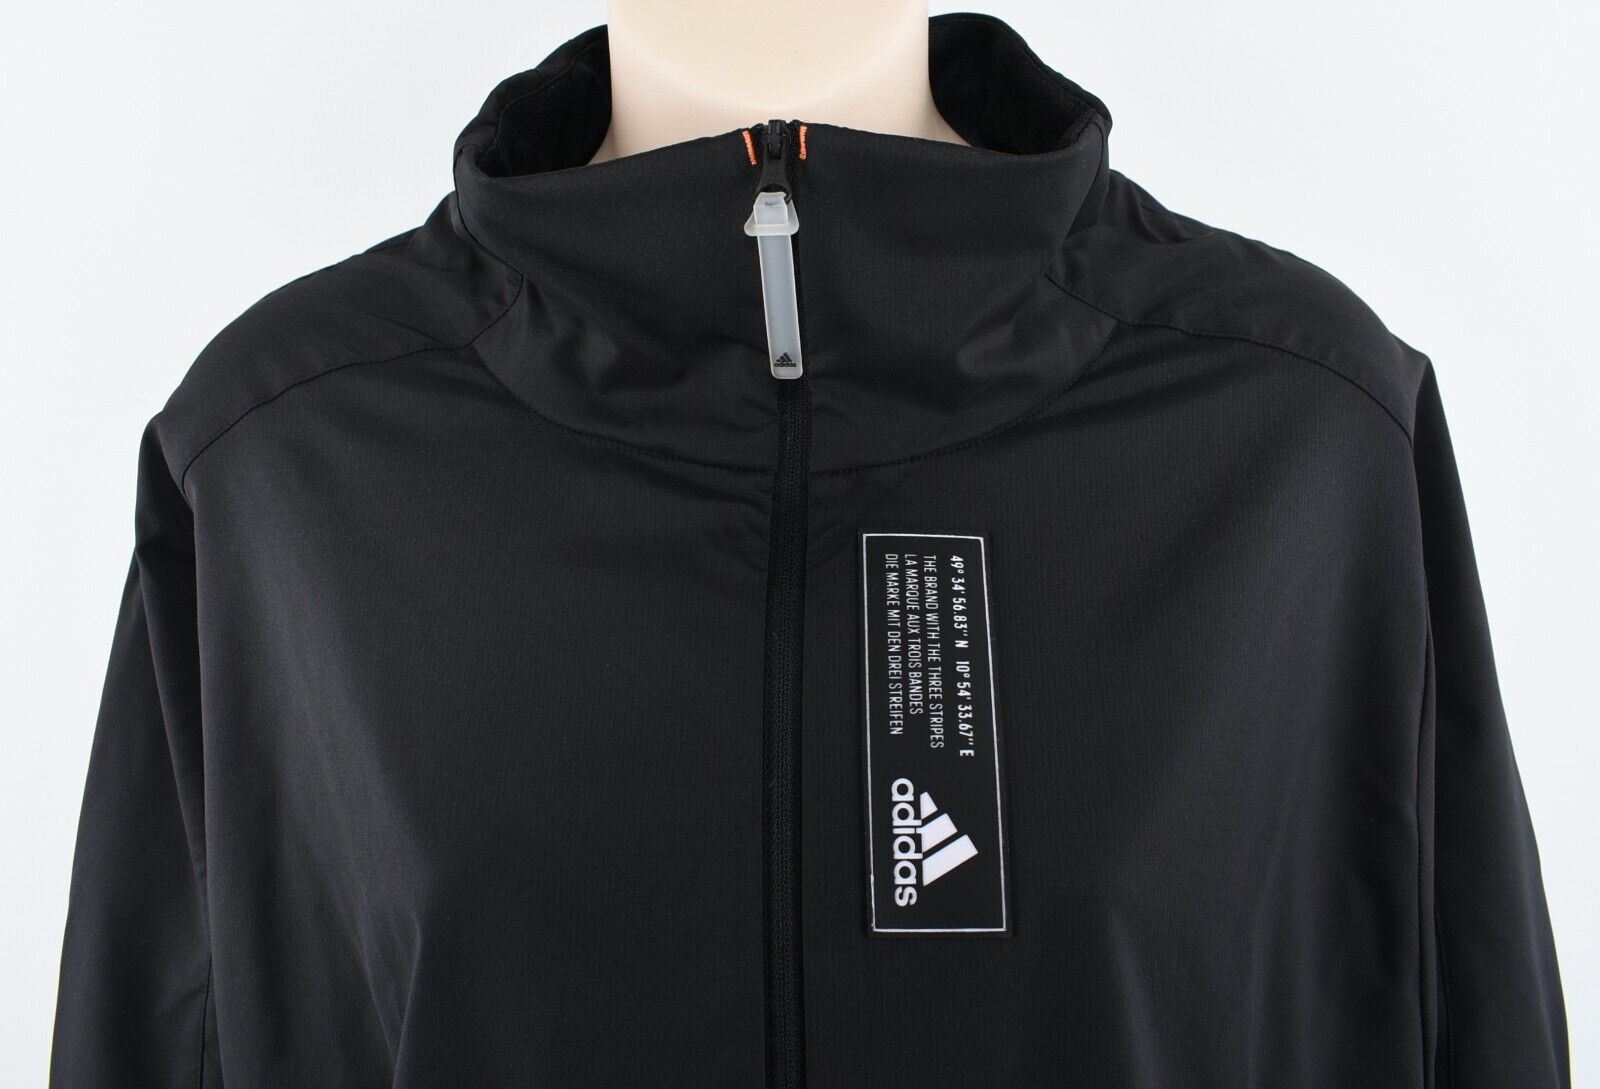 ADIDAS Activewear: Women's Primeblue Short Track Jacket, Black, size M UK 12-14